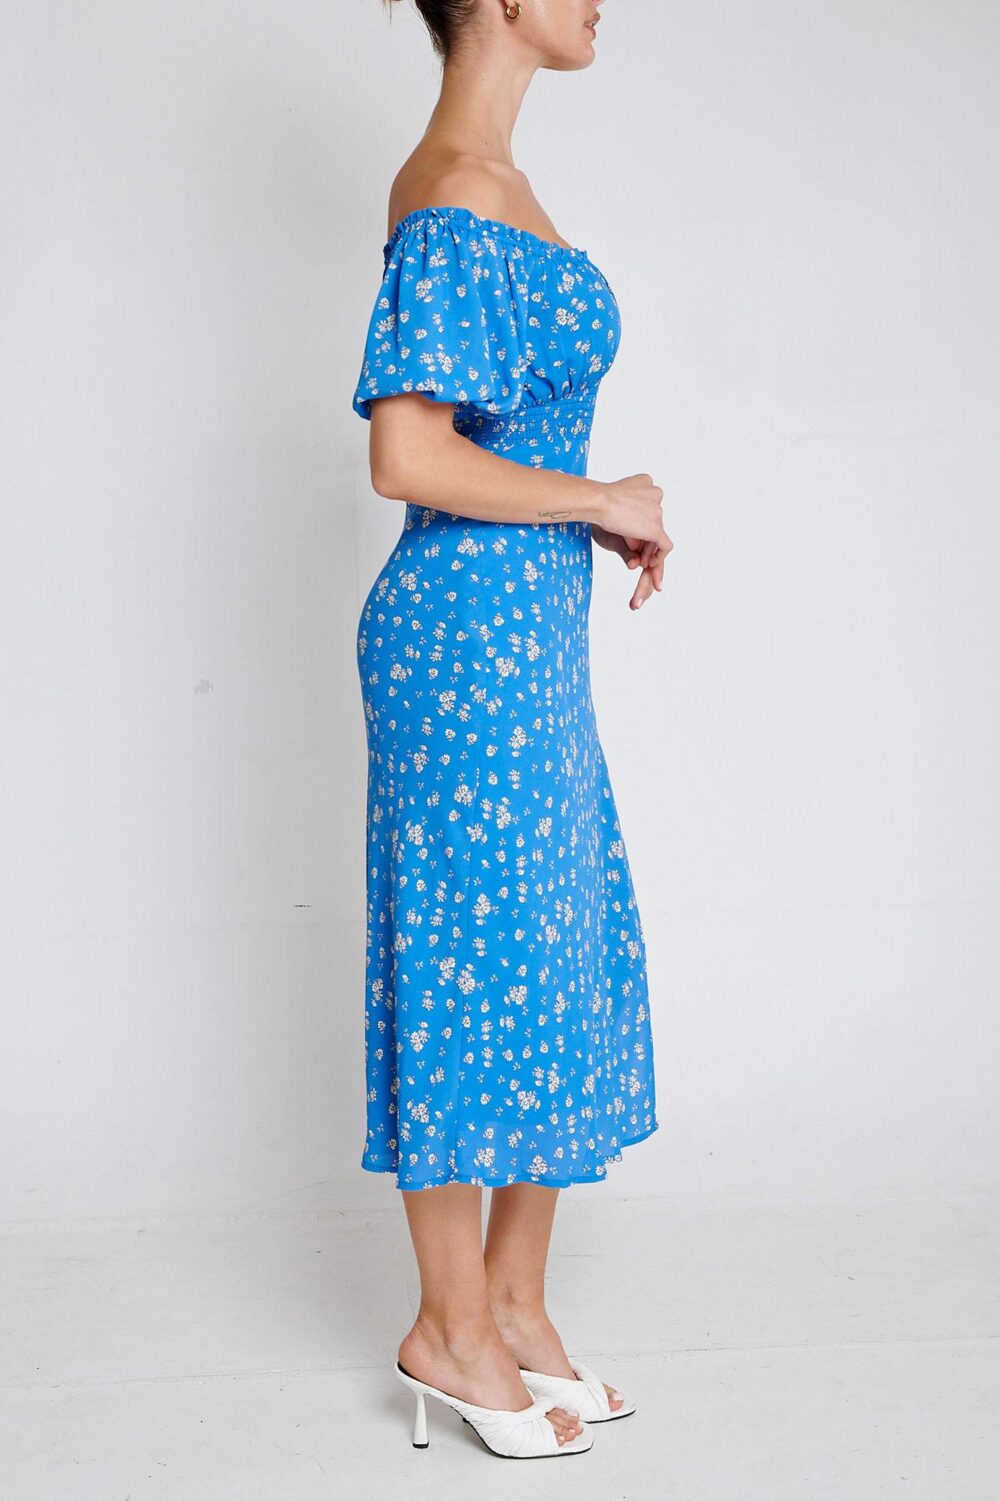 Ladies Dress Colour is Blue Floral Print